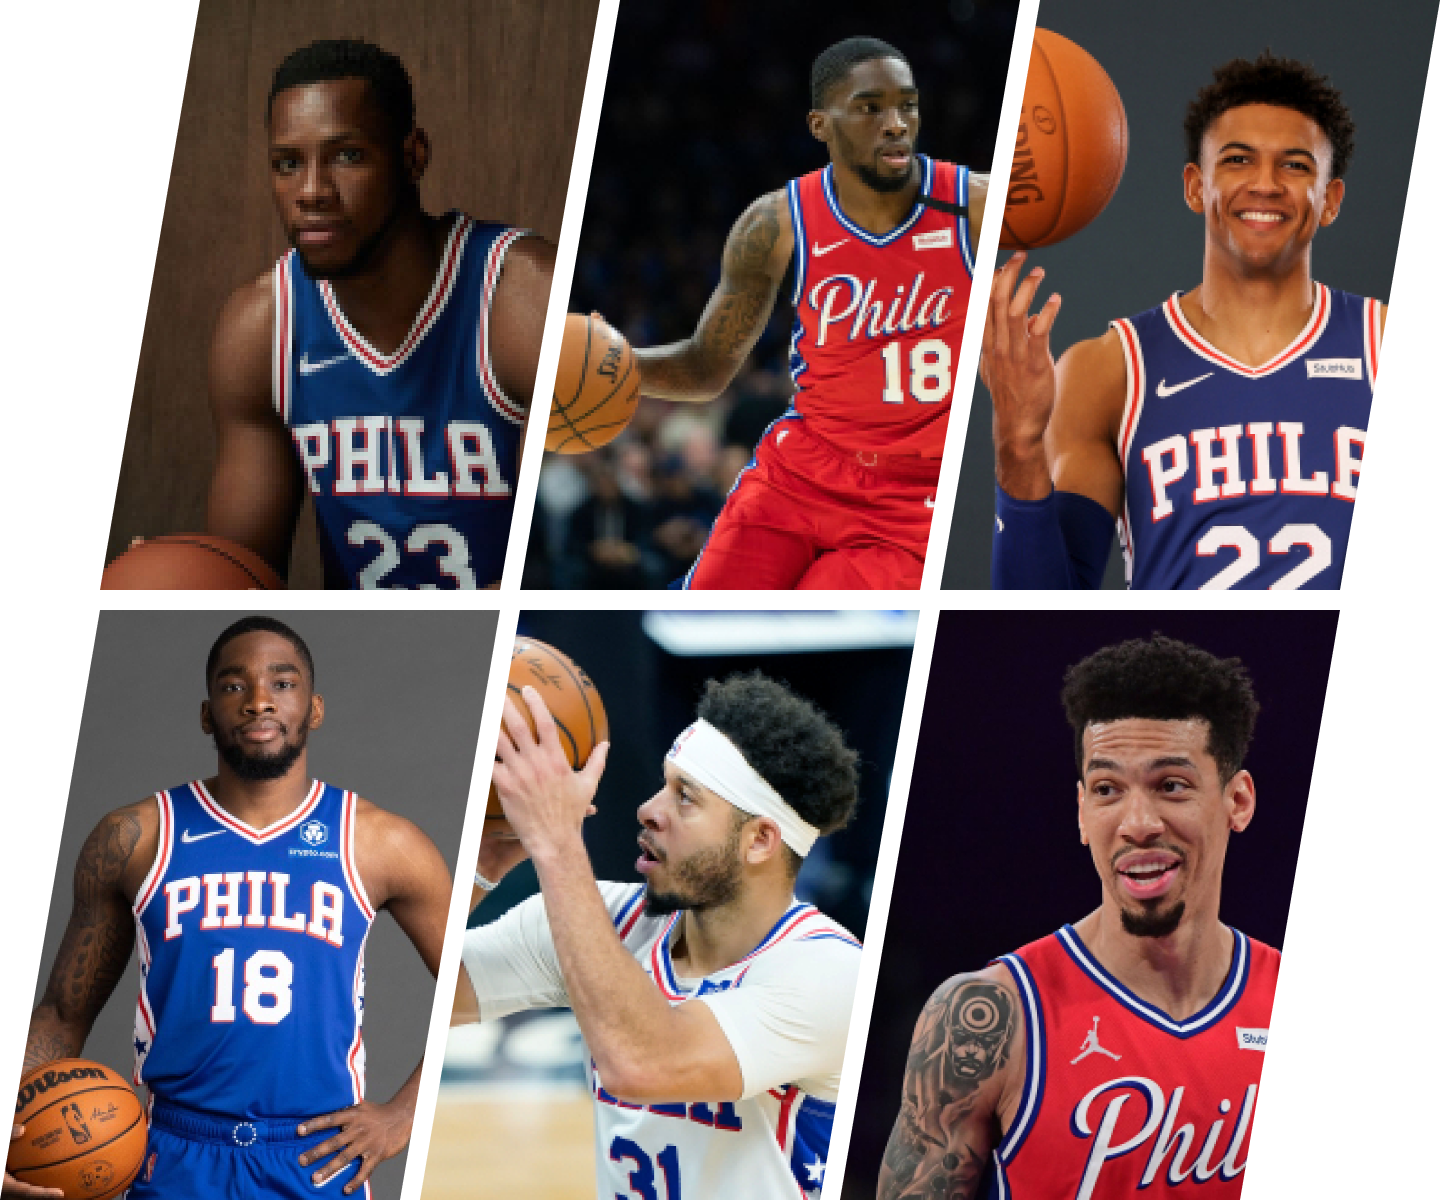 Members of the Philadelphia 76ers